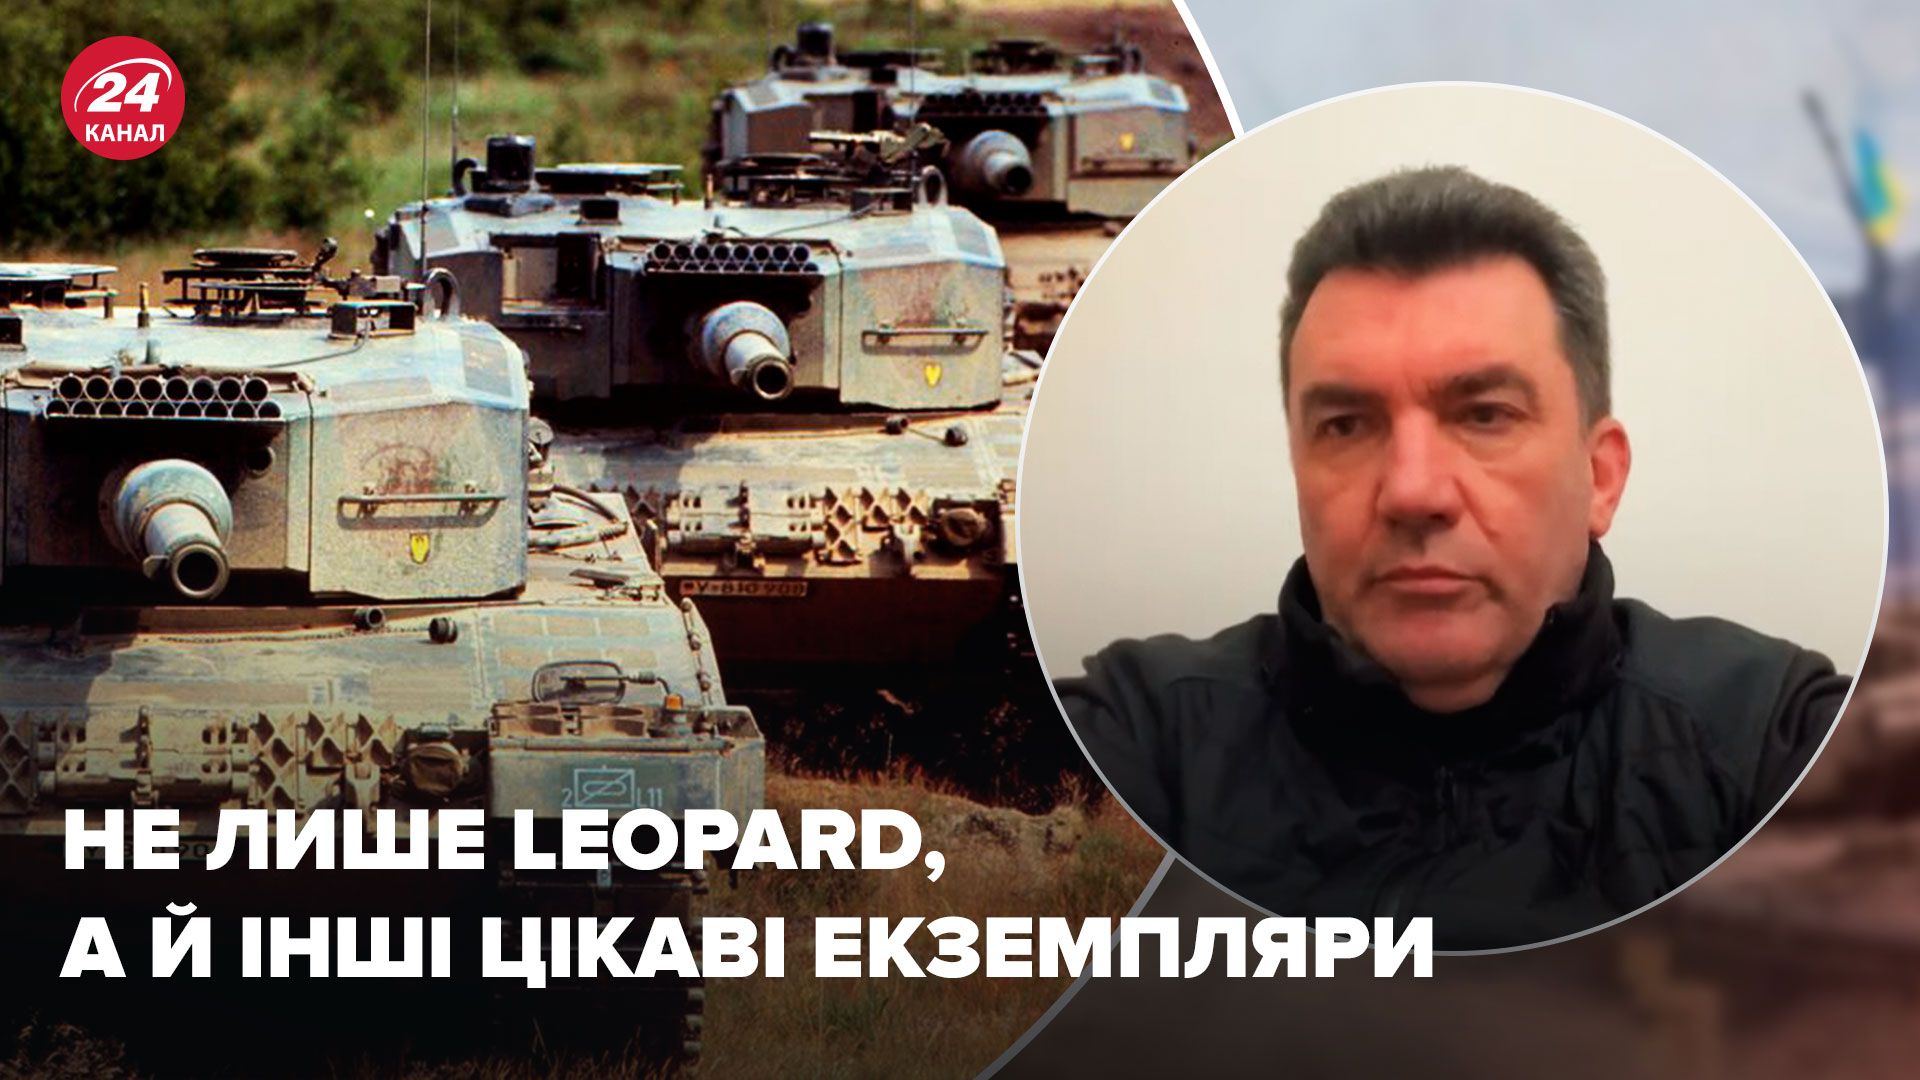 Не только Leopard - Данилов анонсировал интересные экземпляры танков - Новости Украины - 24 Канал